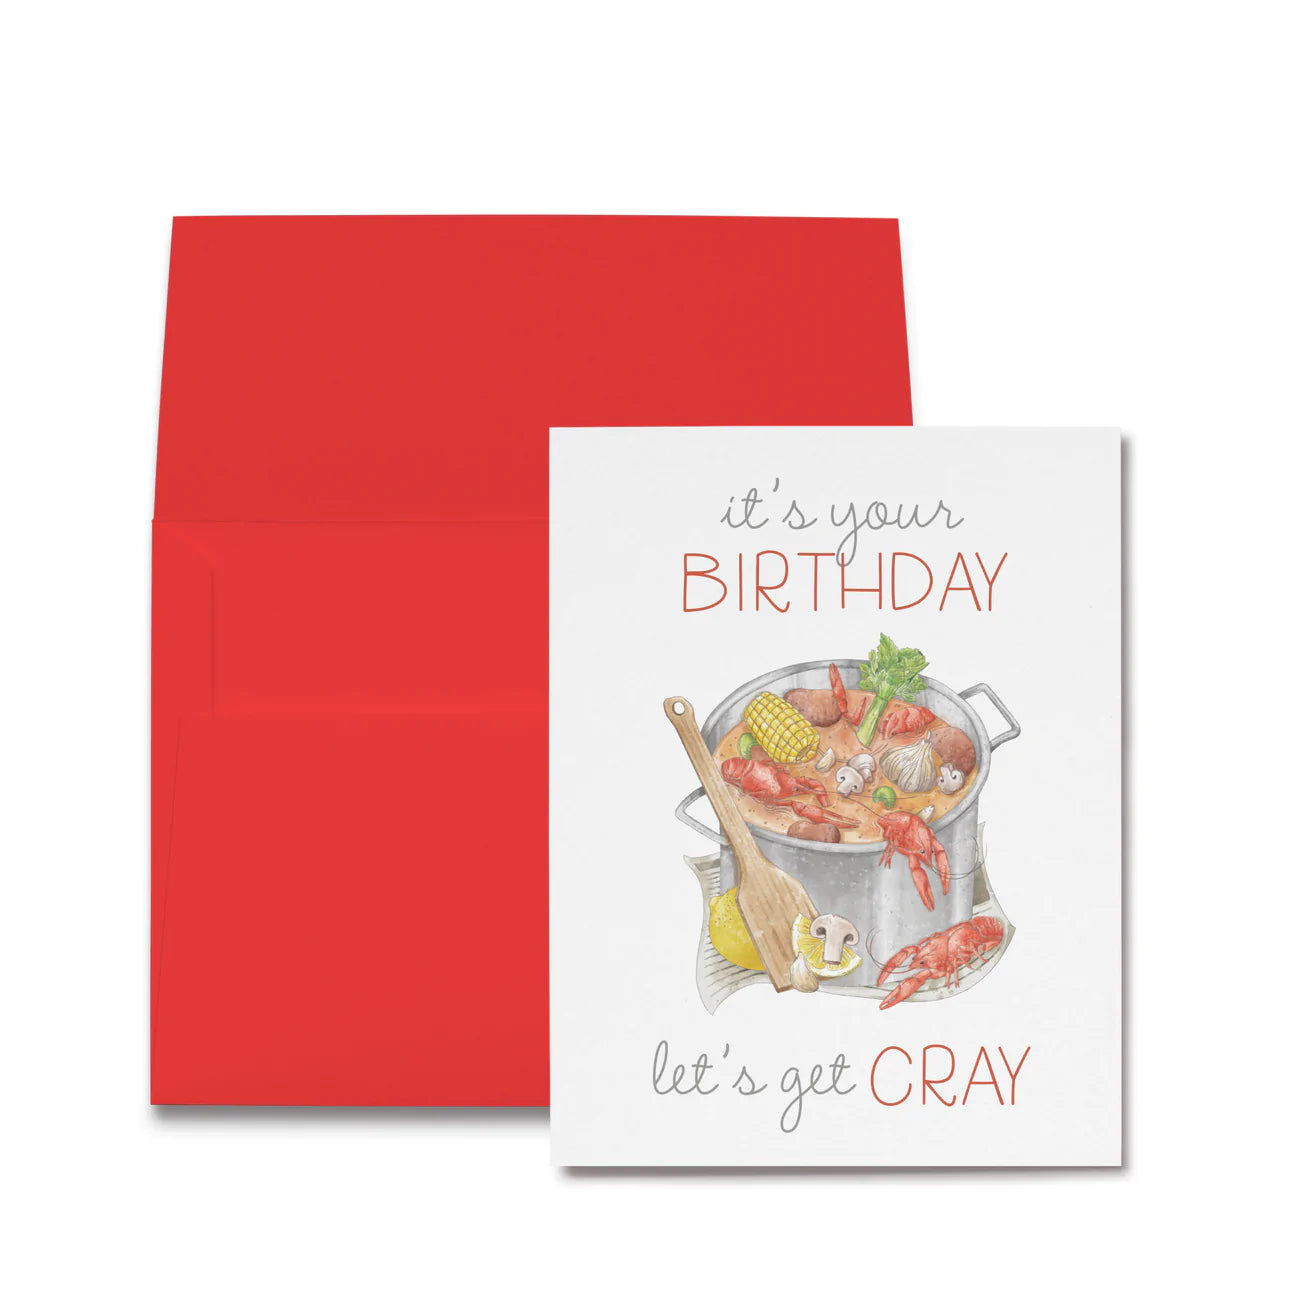 Cray Birthday Card